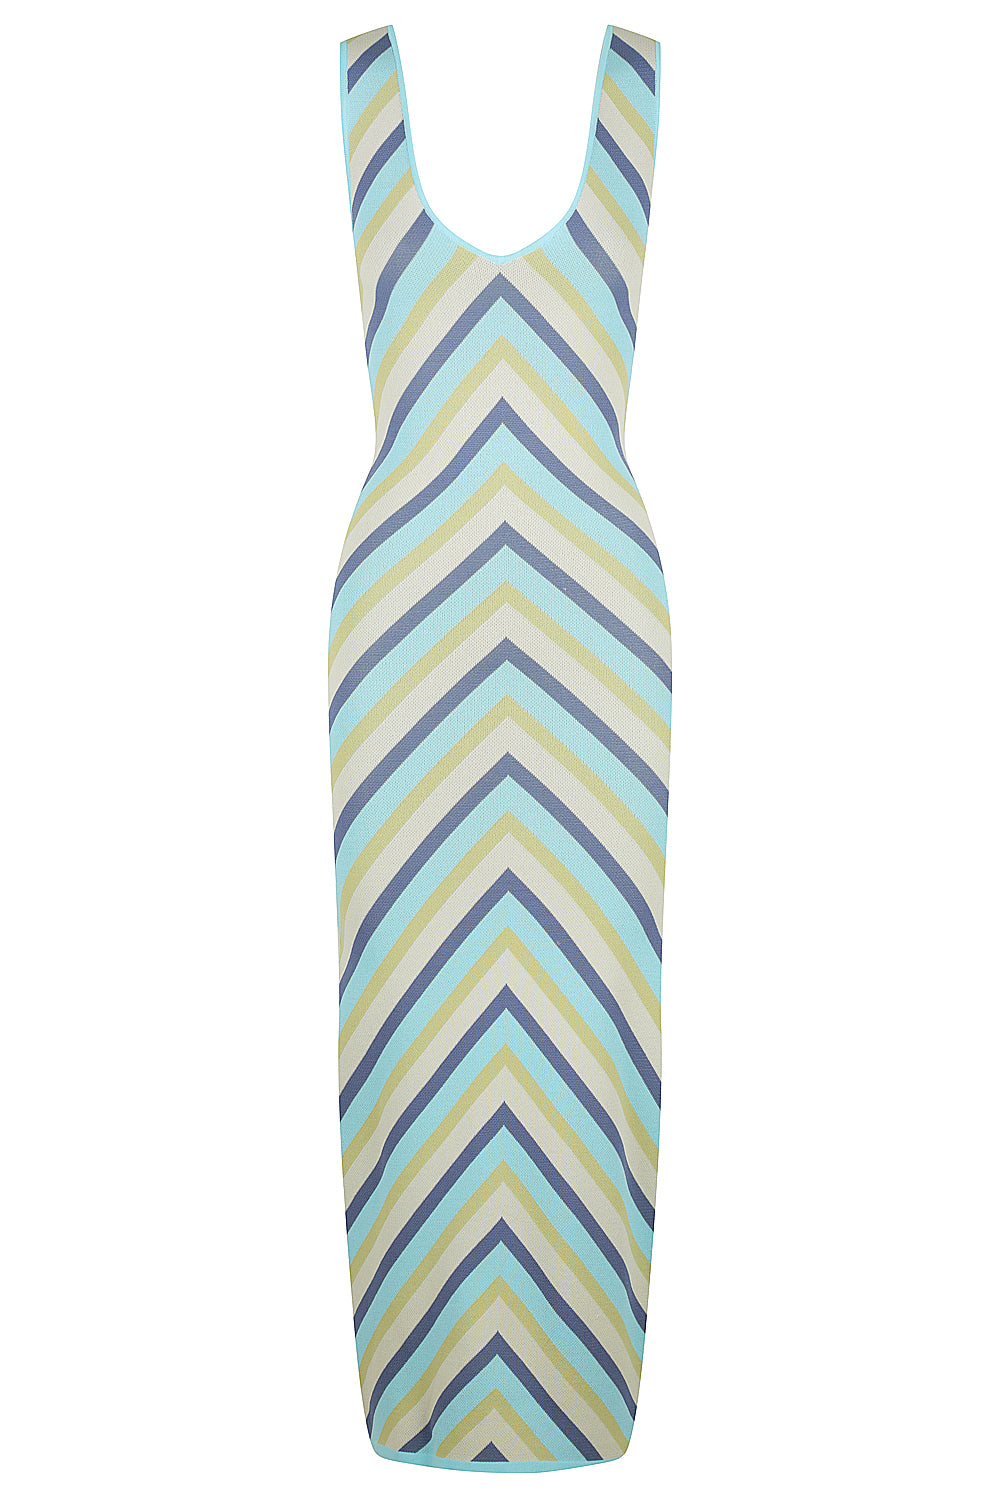 Women’s Maxine Vertical Stripe Dress - Blue Curacao, Citrus And Denim Large St Cloud Label